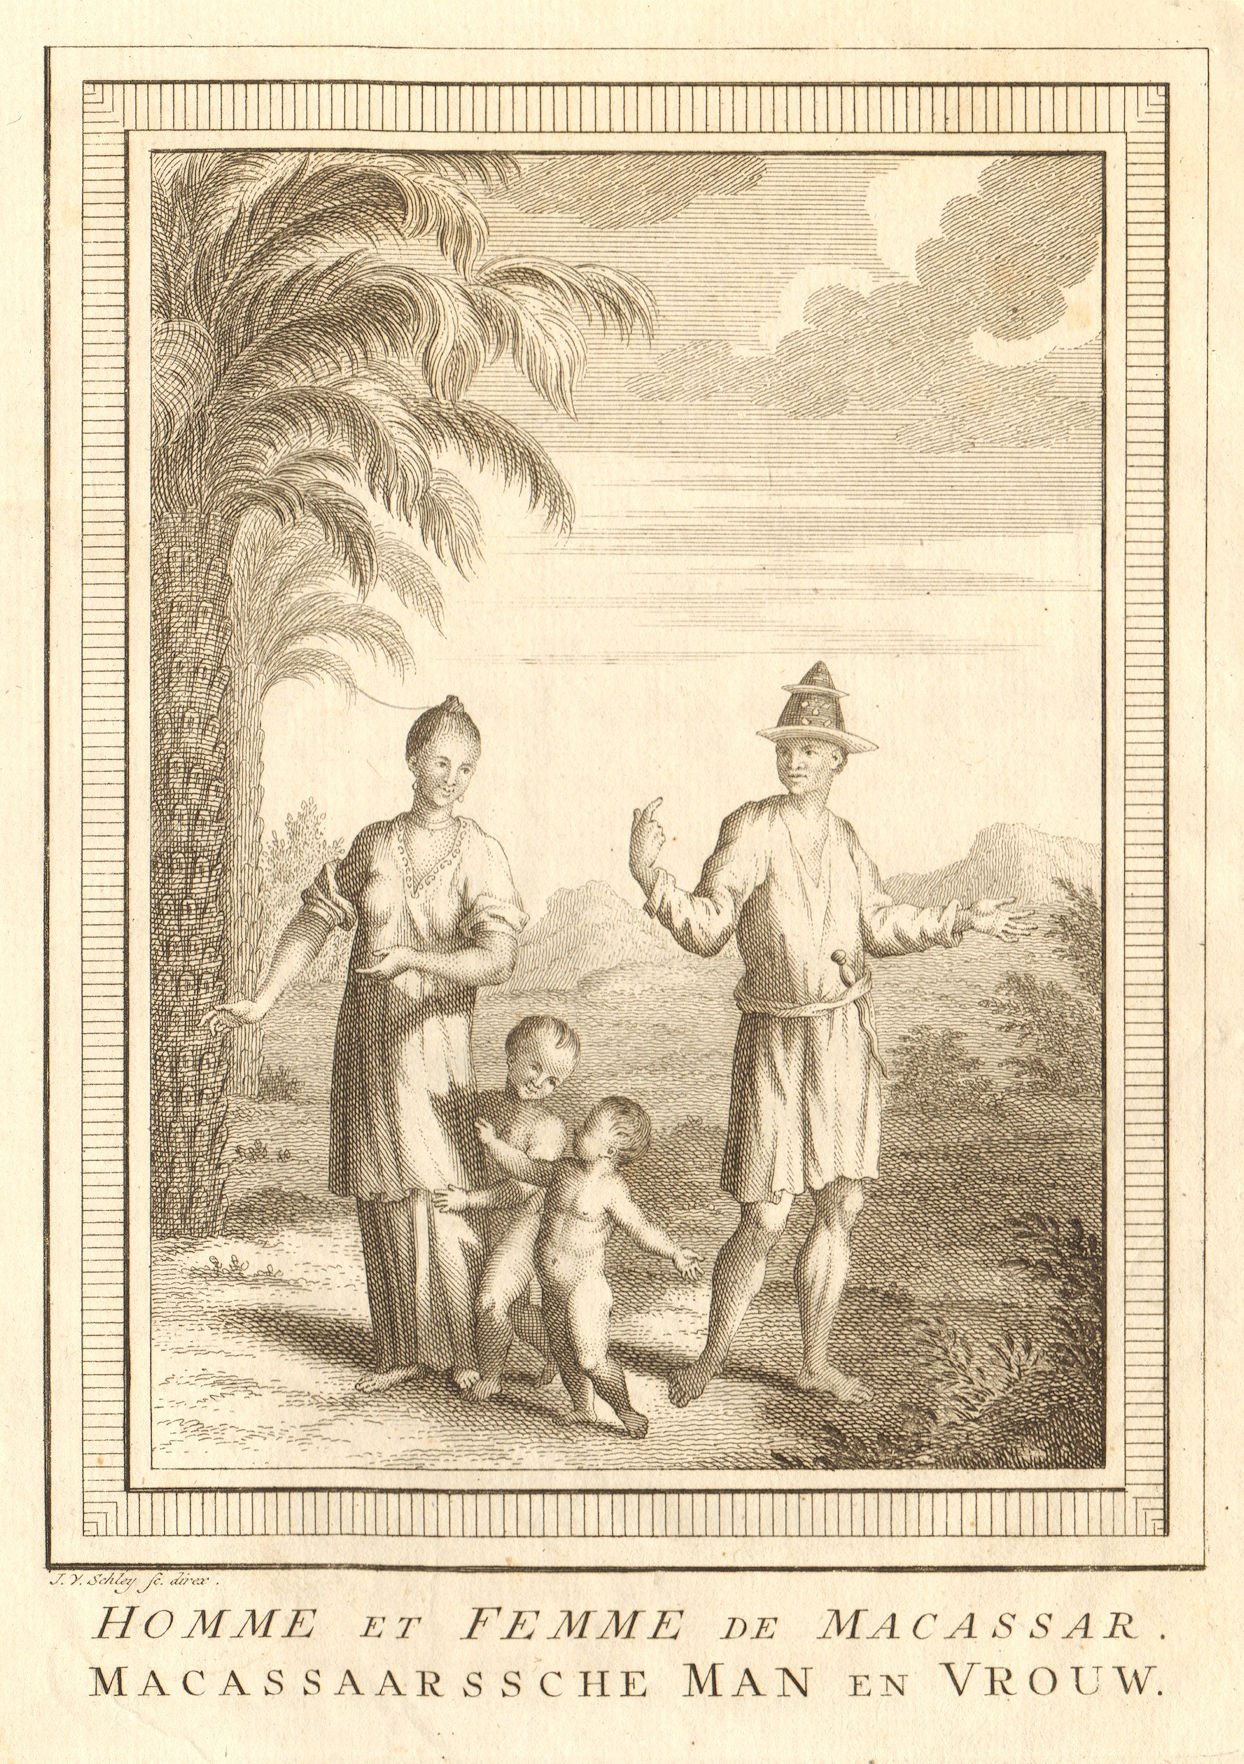 Associate Product 'Homme & Femme de Macassar'. Sulawesi. Man & woman of Makassar. SCHLEY 1757